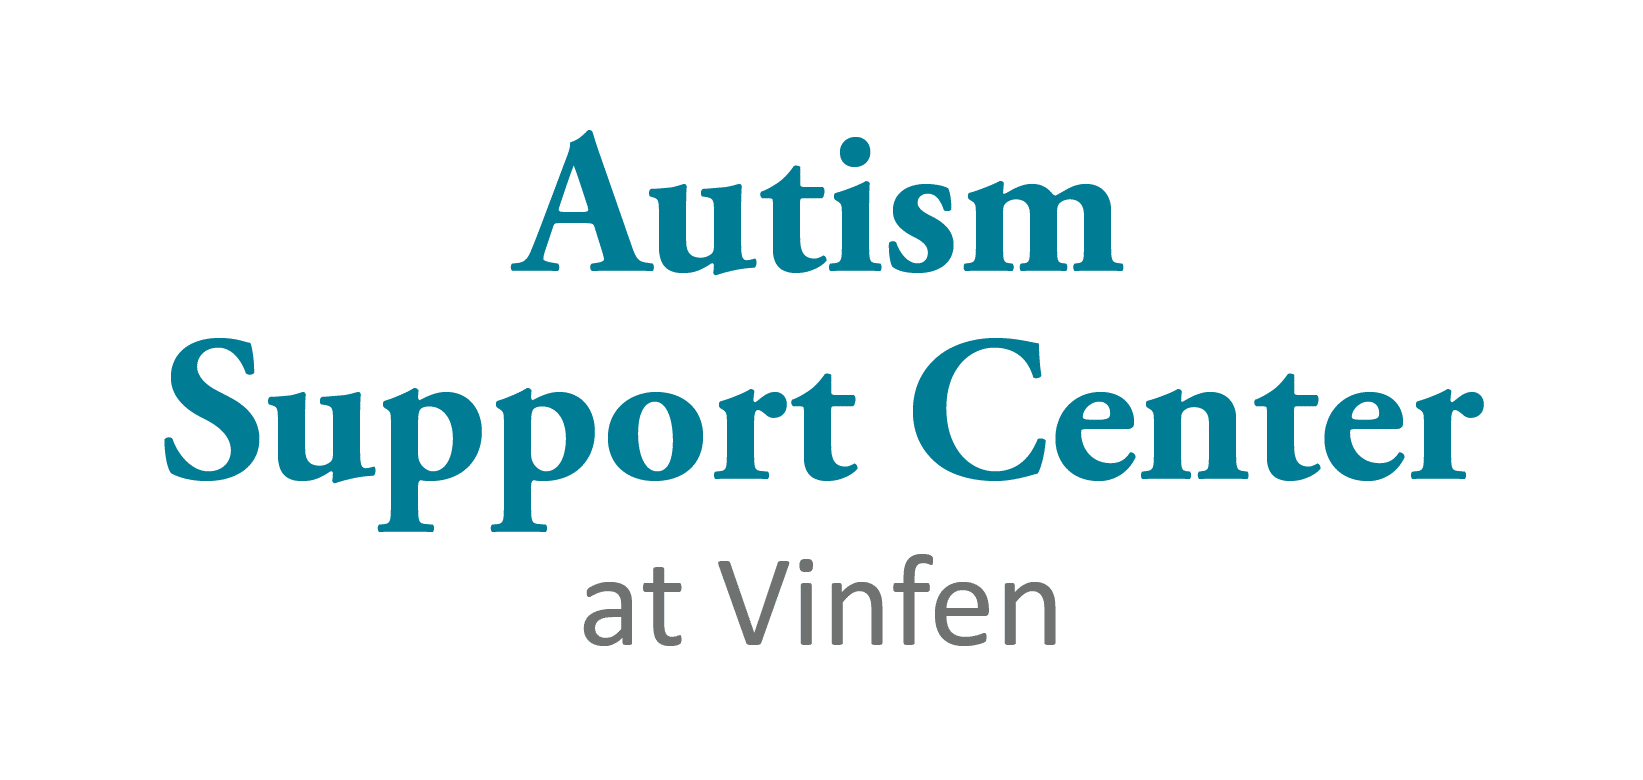 Vinfen Autism Support Center Logo Horizontal Color 01